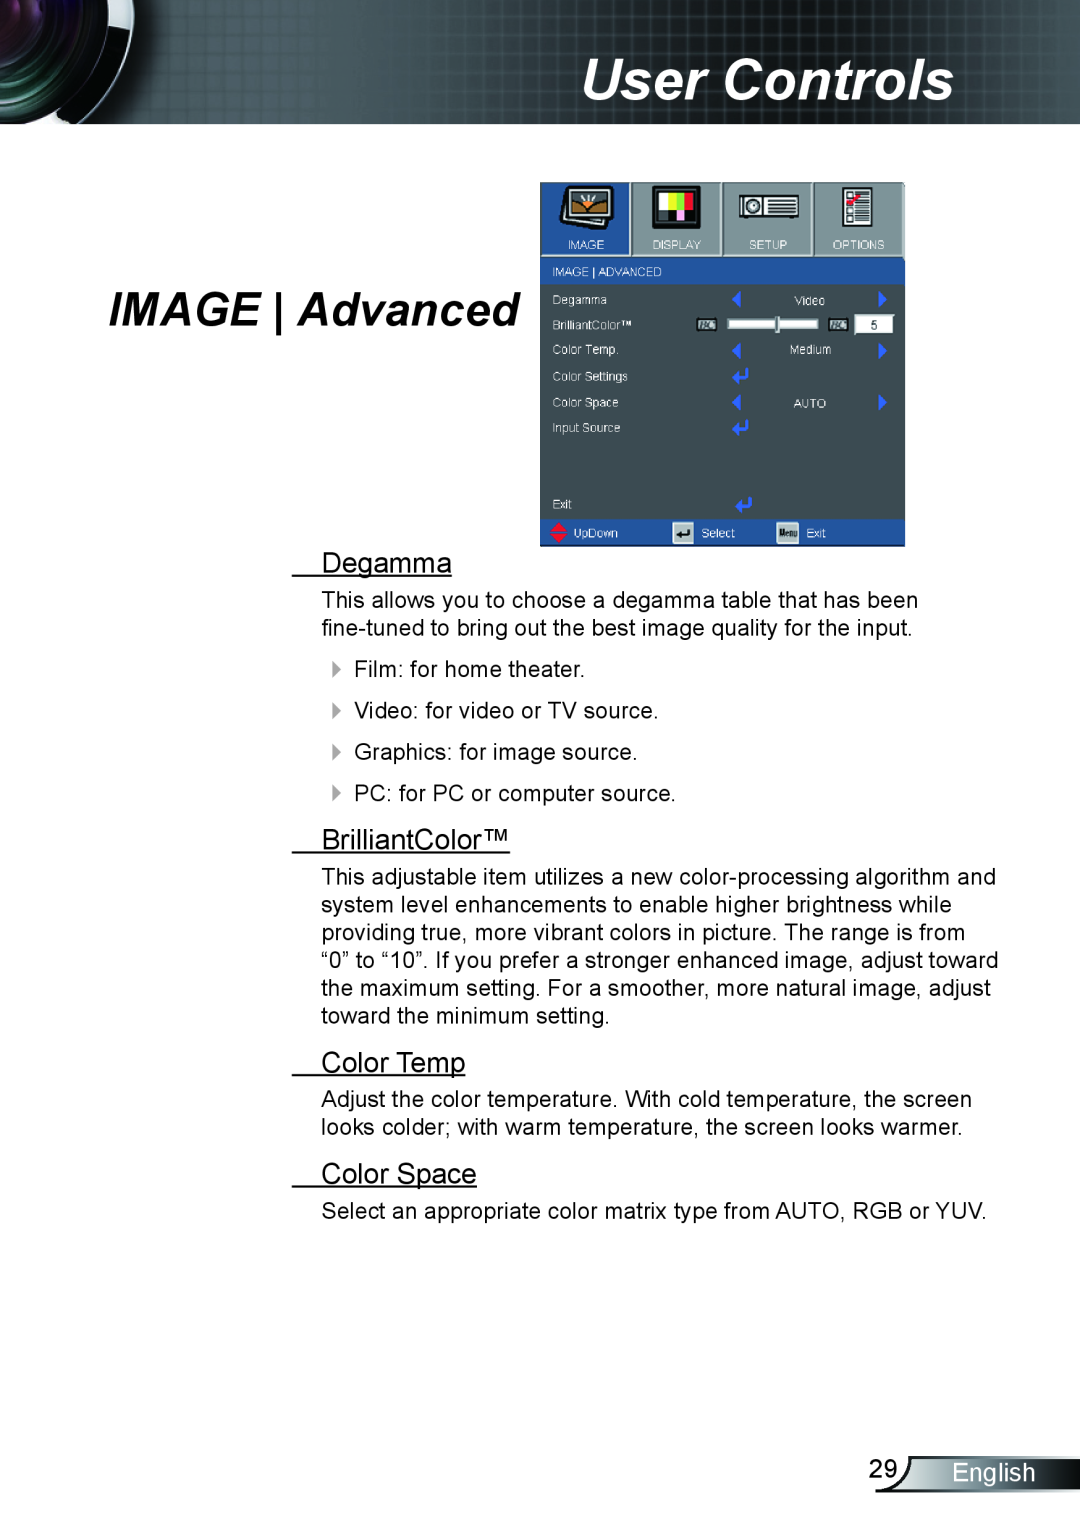 Optoma Technology EX542, TX615 IMAGE Advanced, Degamma, BrilliantColor, Color Temp, Color Space, English, User Controls 